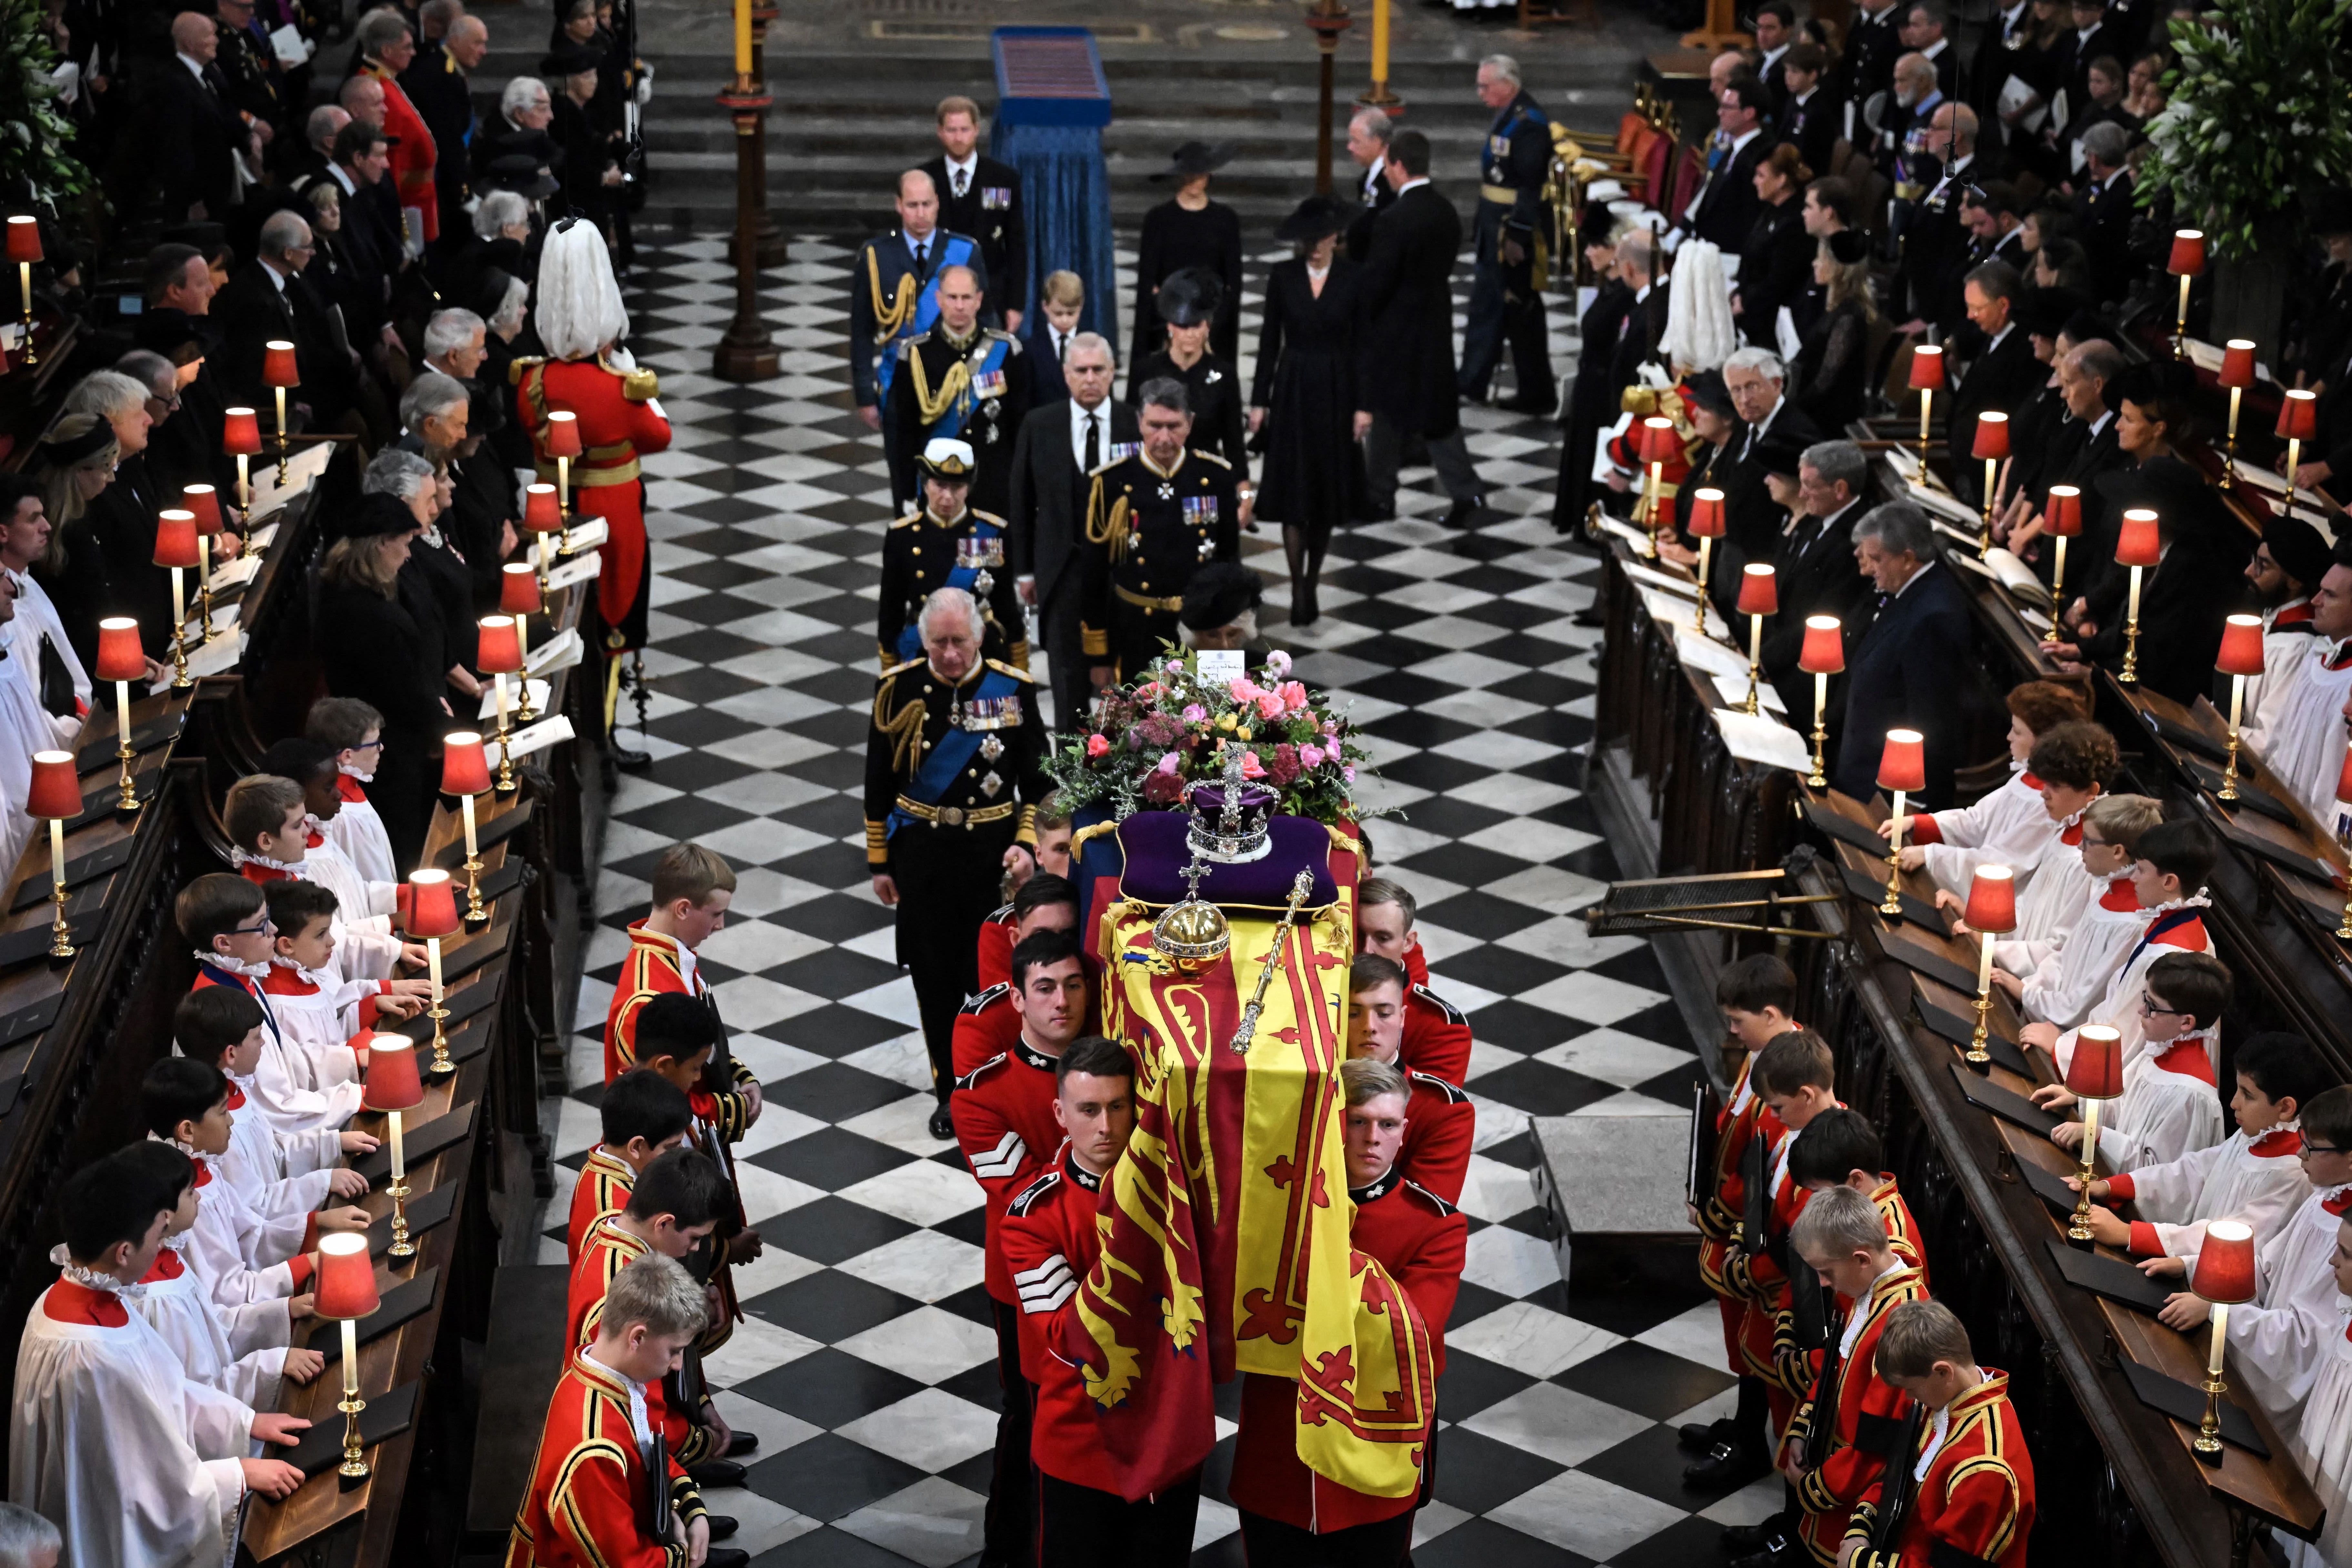 O governo do Reino Unido revelou que o custo do funeral da rainha Elizabeth II ultrapassou US$ 200 milhões